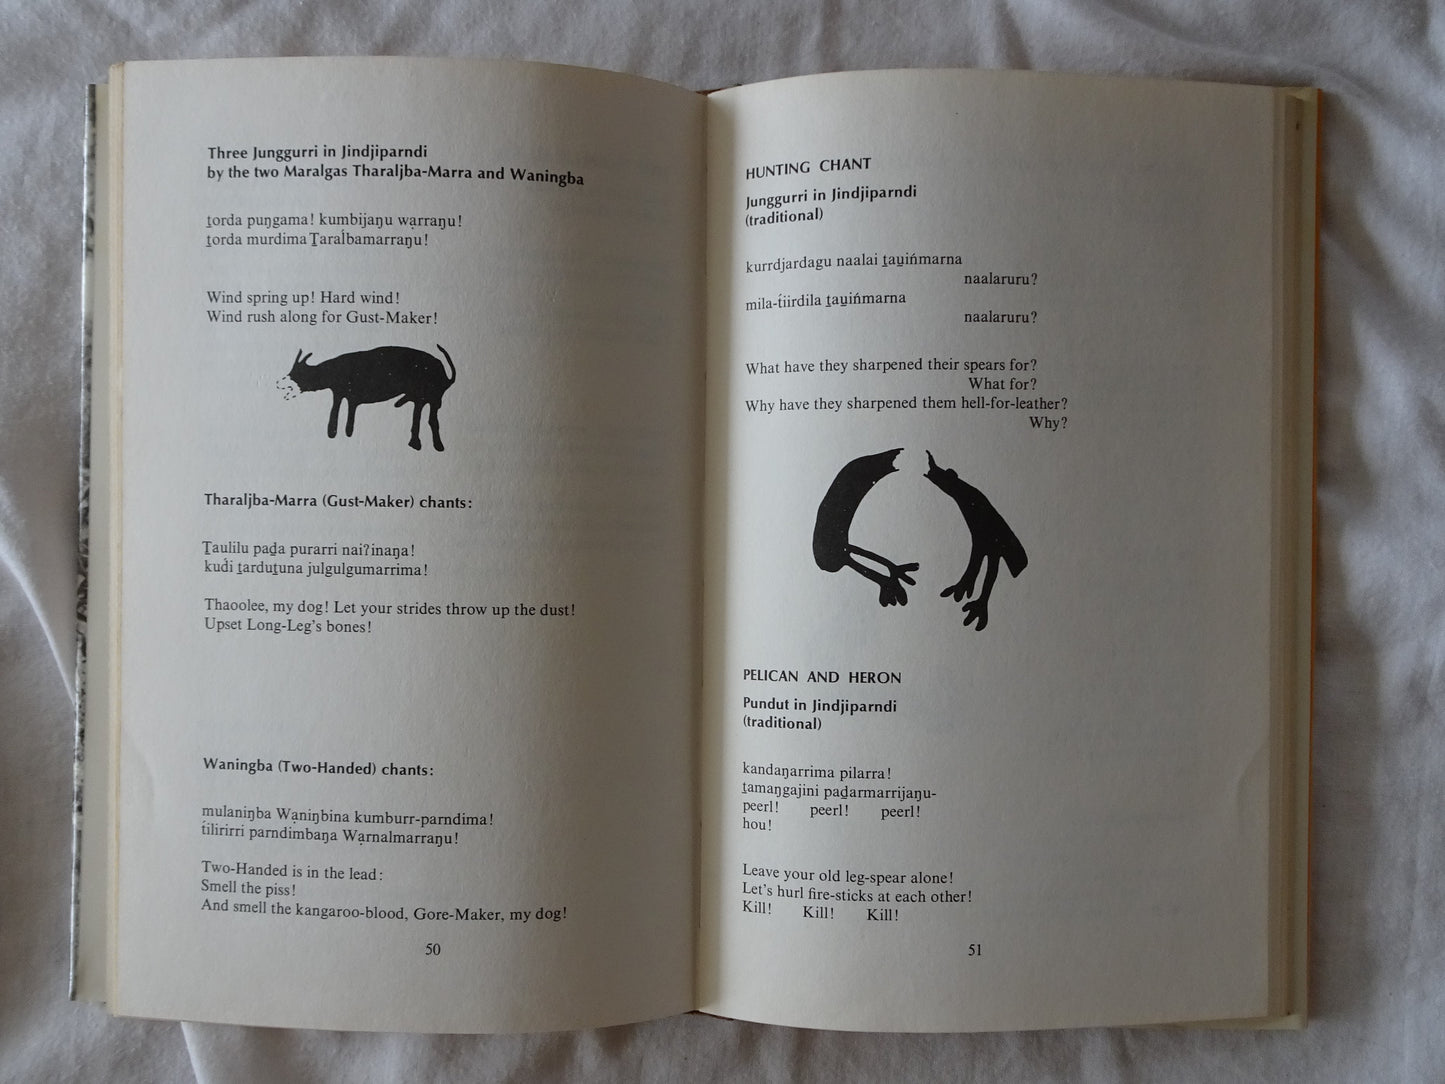 Taruru Aboriginal Song Poetry From The Pilbara by C. G. von Brandenstein and A.P. Thomas